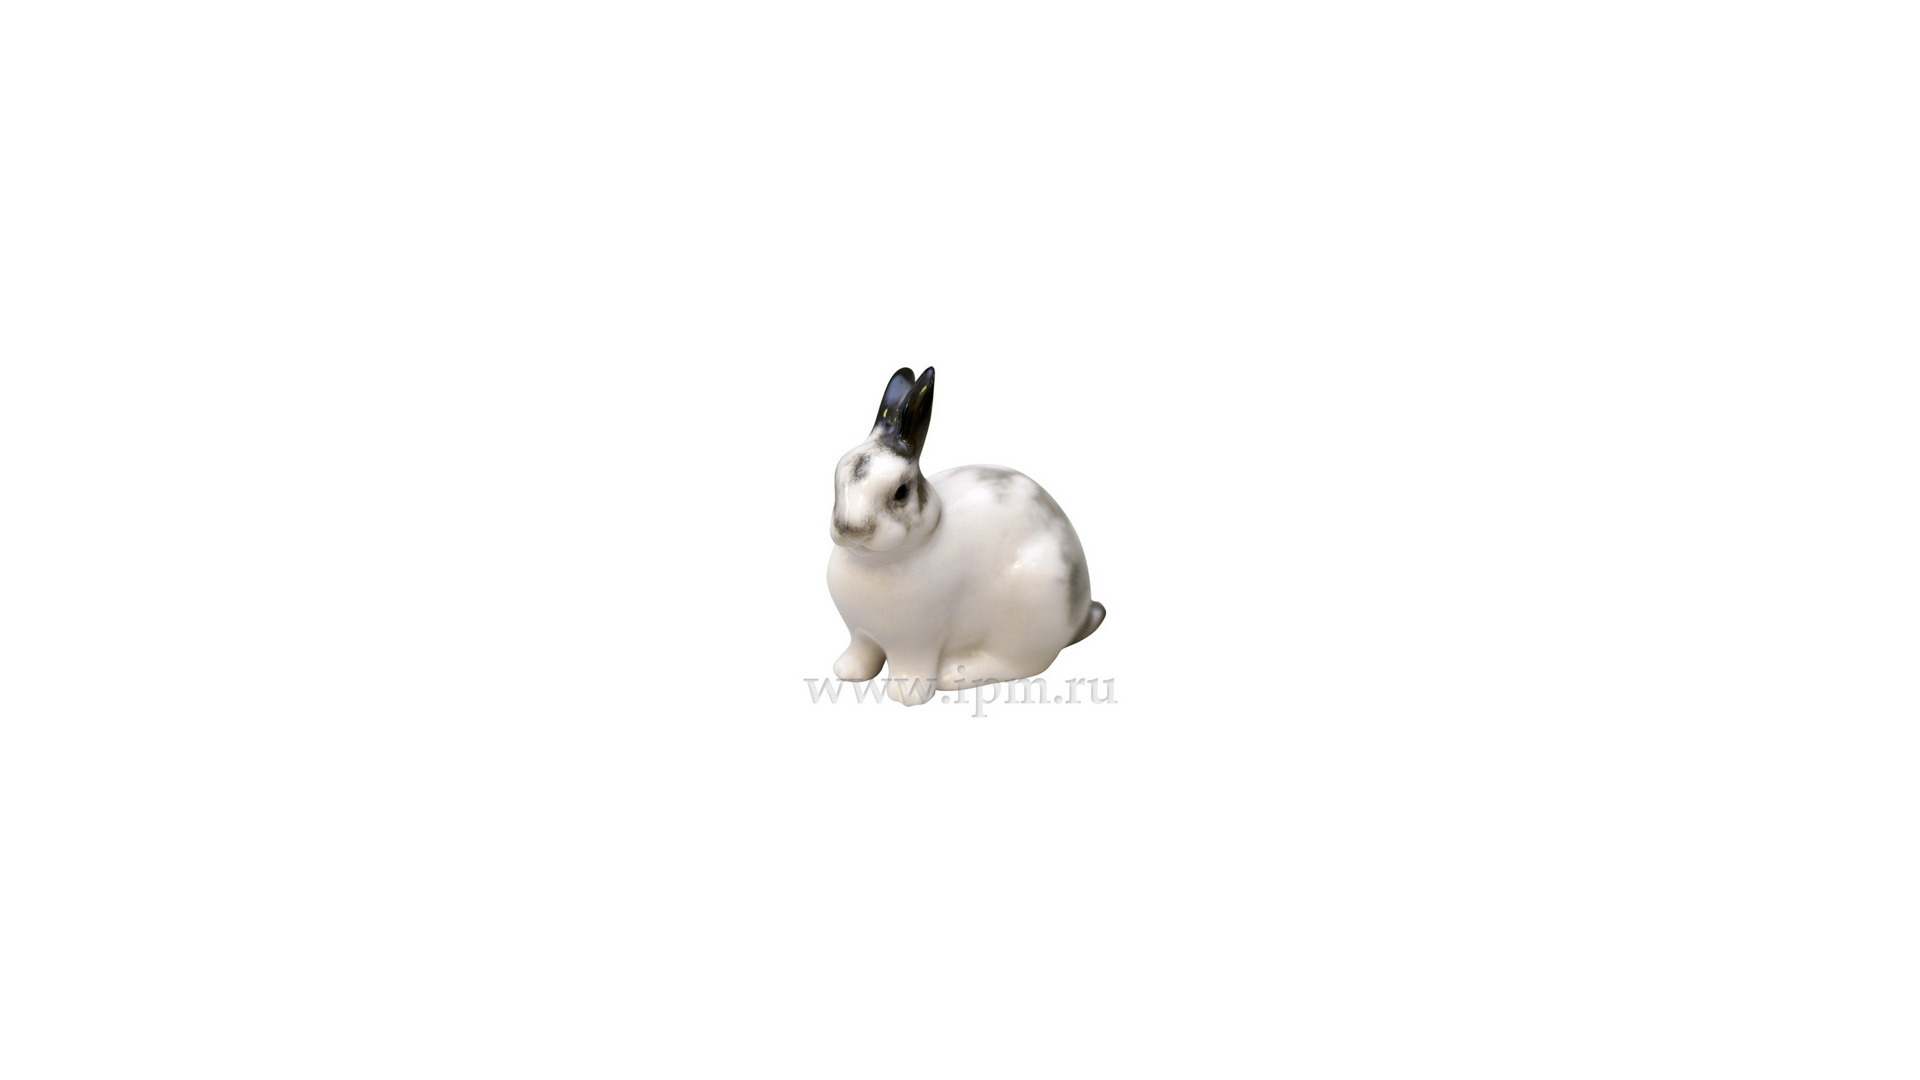 Скульптура ИФЗ Кролик Крош 6,2 см, фарфор твердый